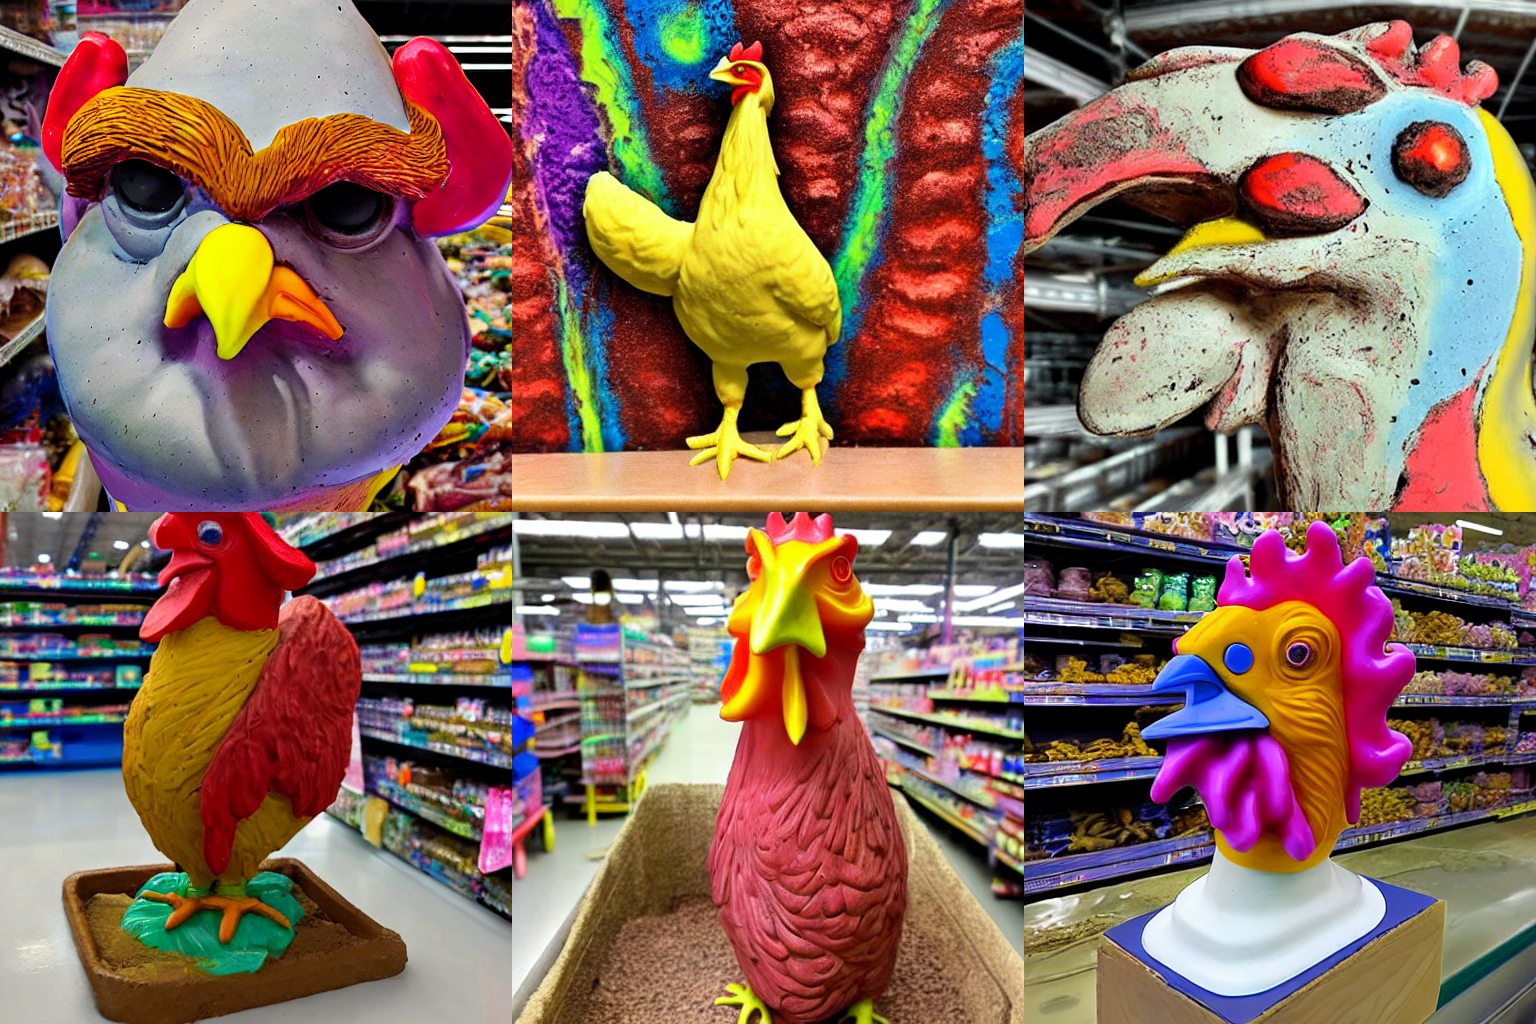 A weird melty clay sculpture of a chicken in a Walmart. 